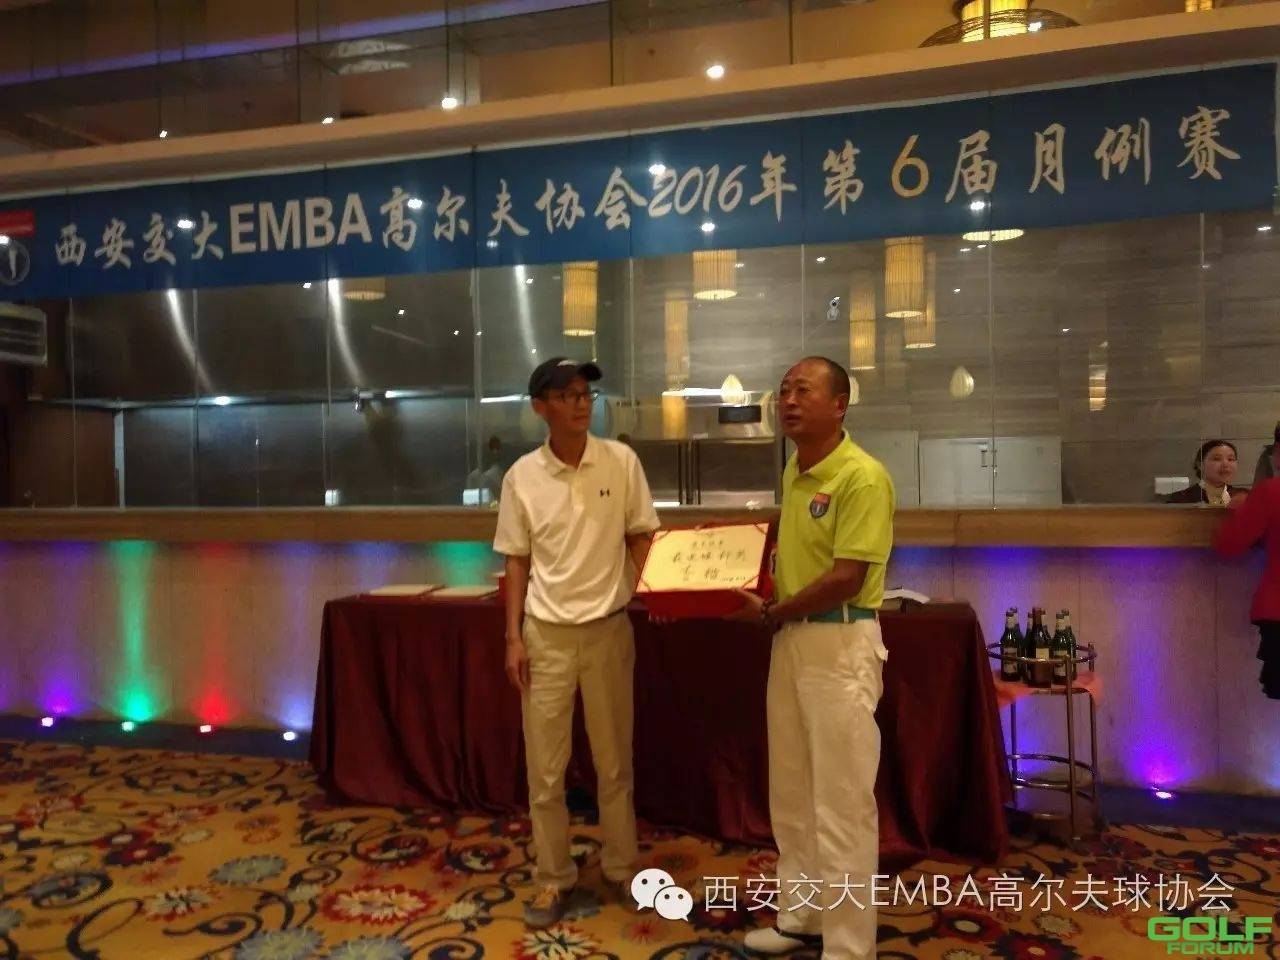 西安交大EMBA高尔夫协会2016年第6届月例赛圆满结束